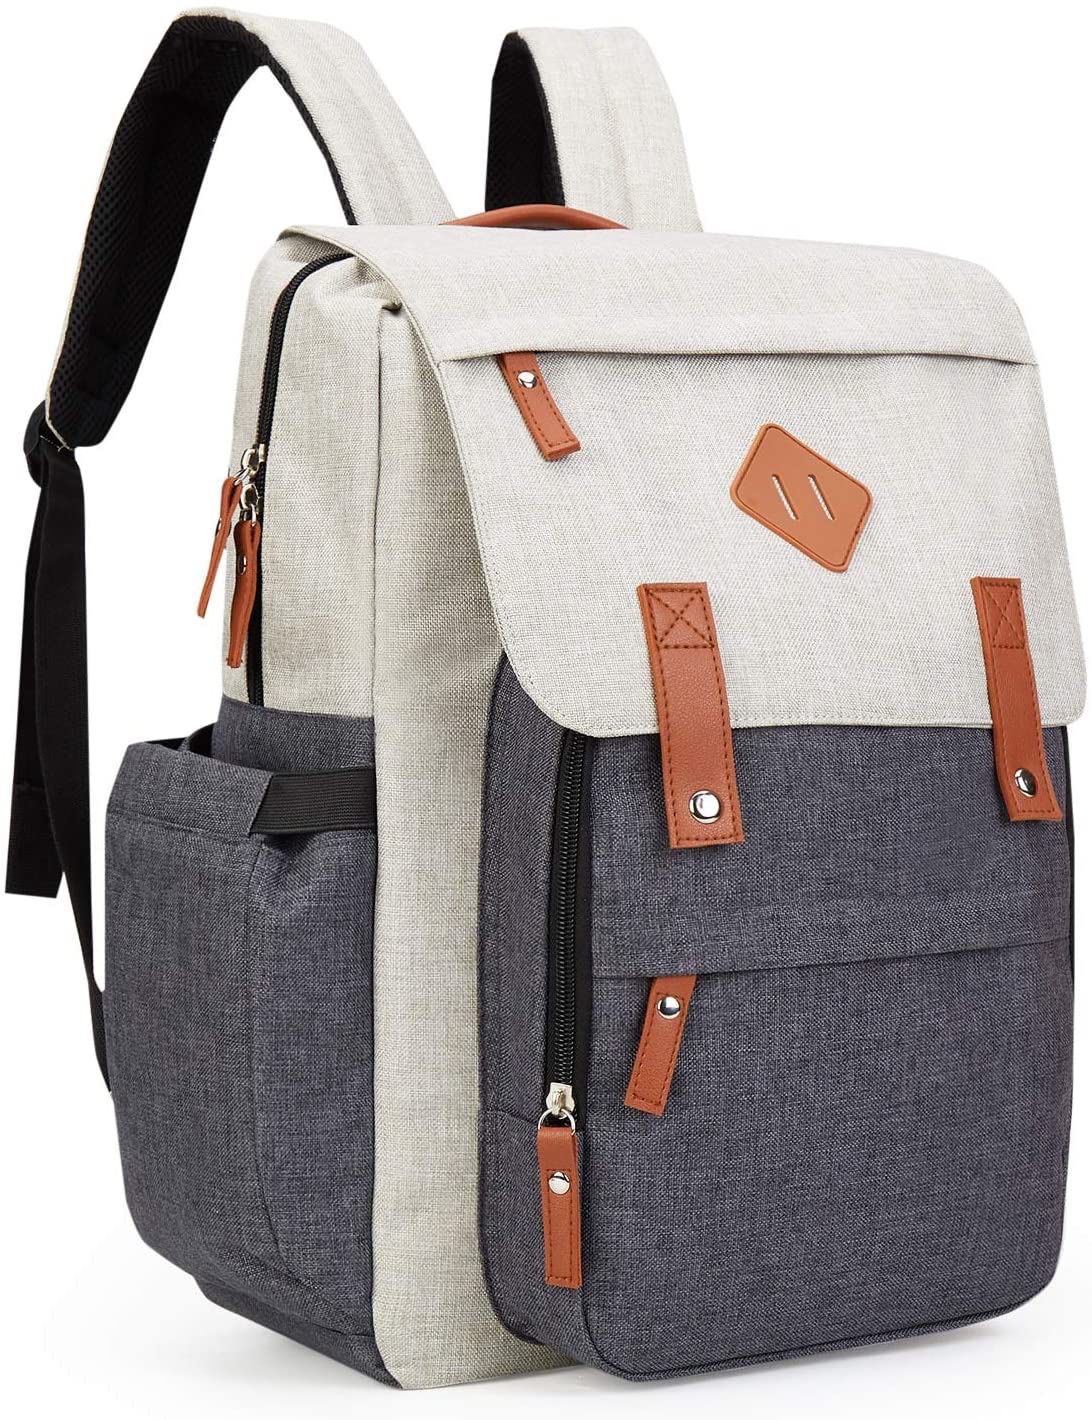 Brand new Diaper Backpack Waterproof